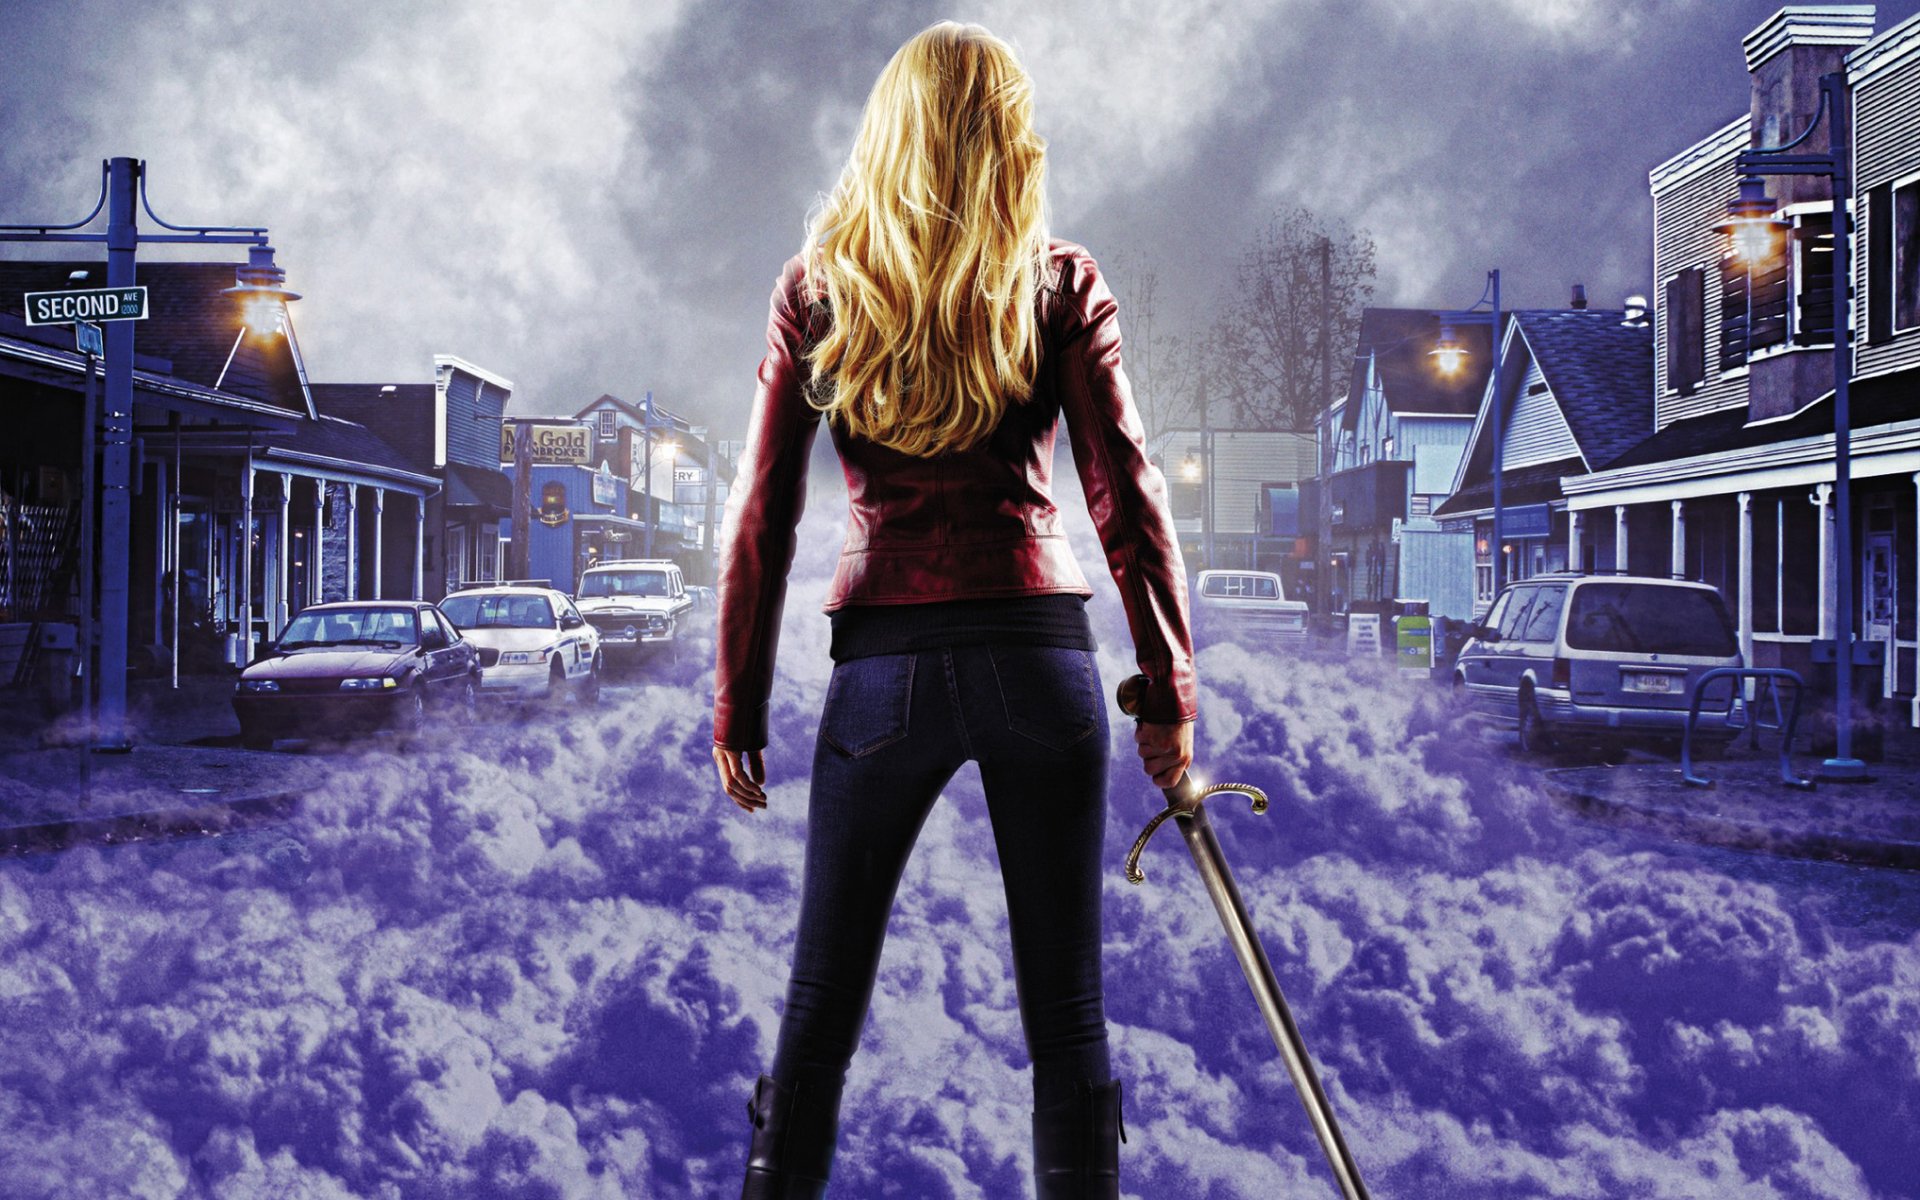 однажды в сказке однажды город туман фиолетовый девушка меч машины красная куртка блондинка тучи